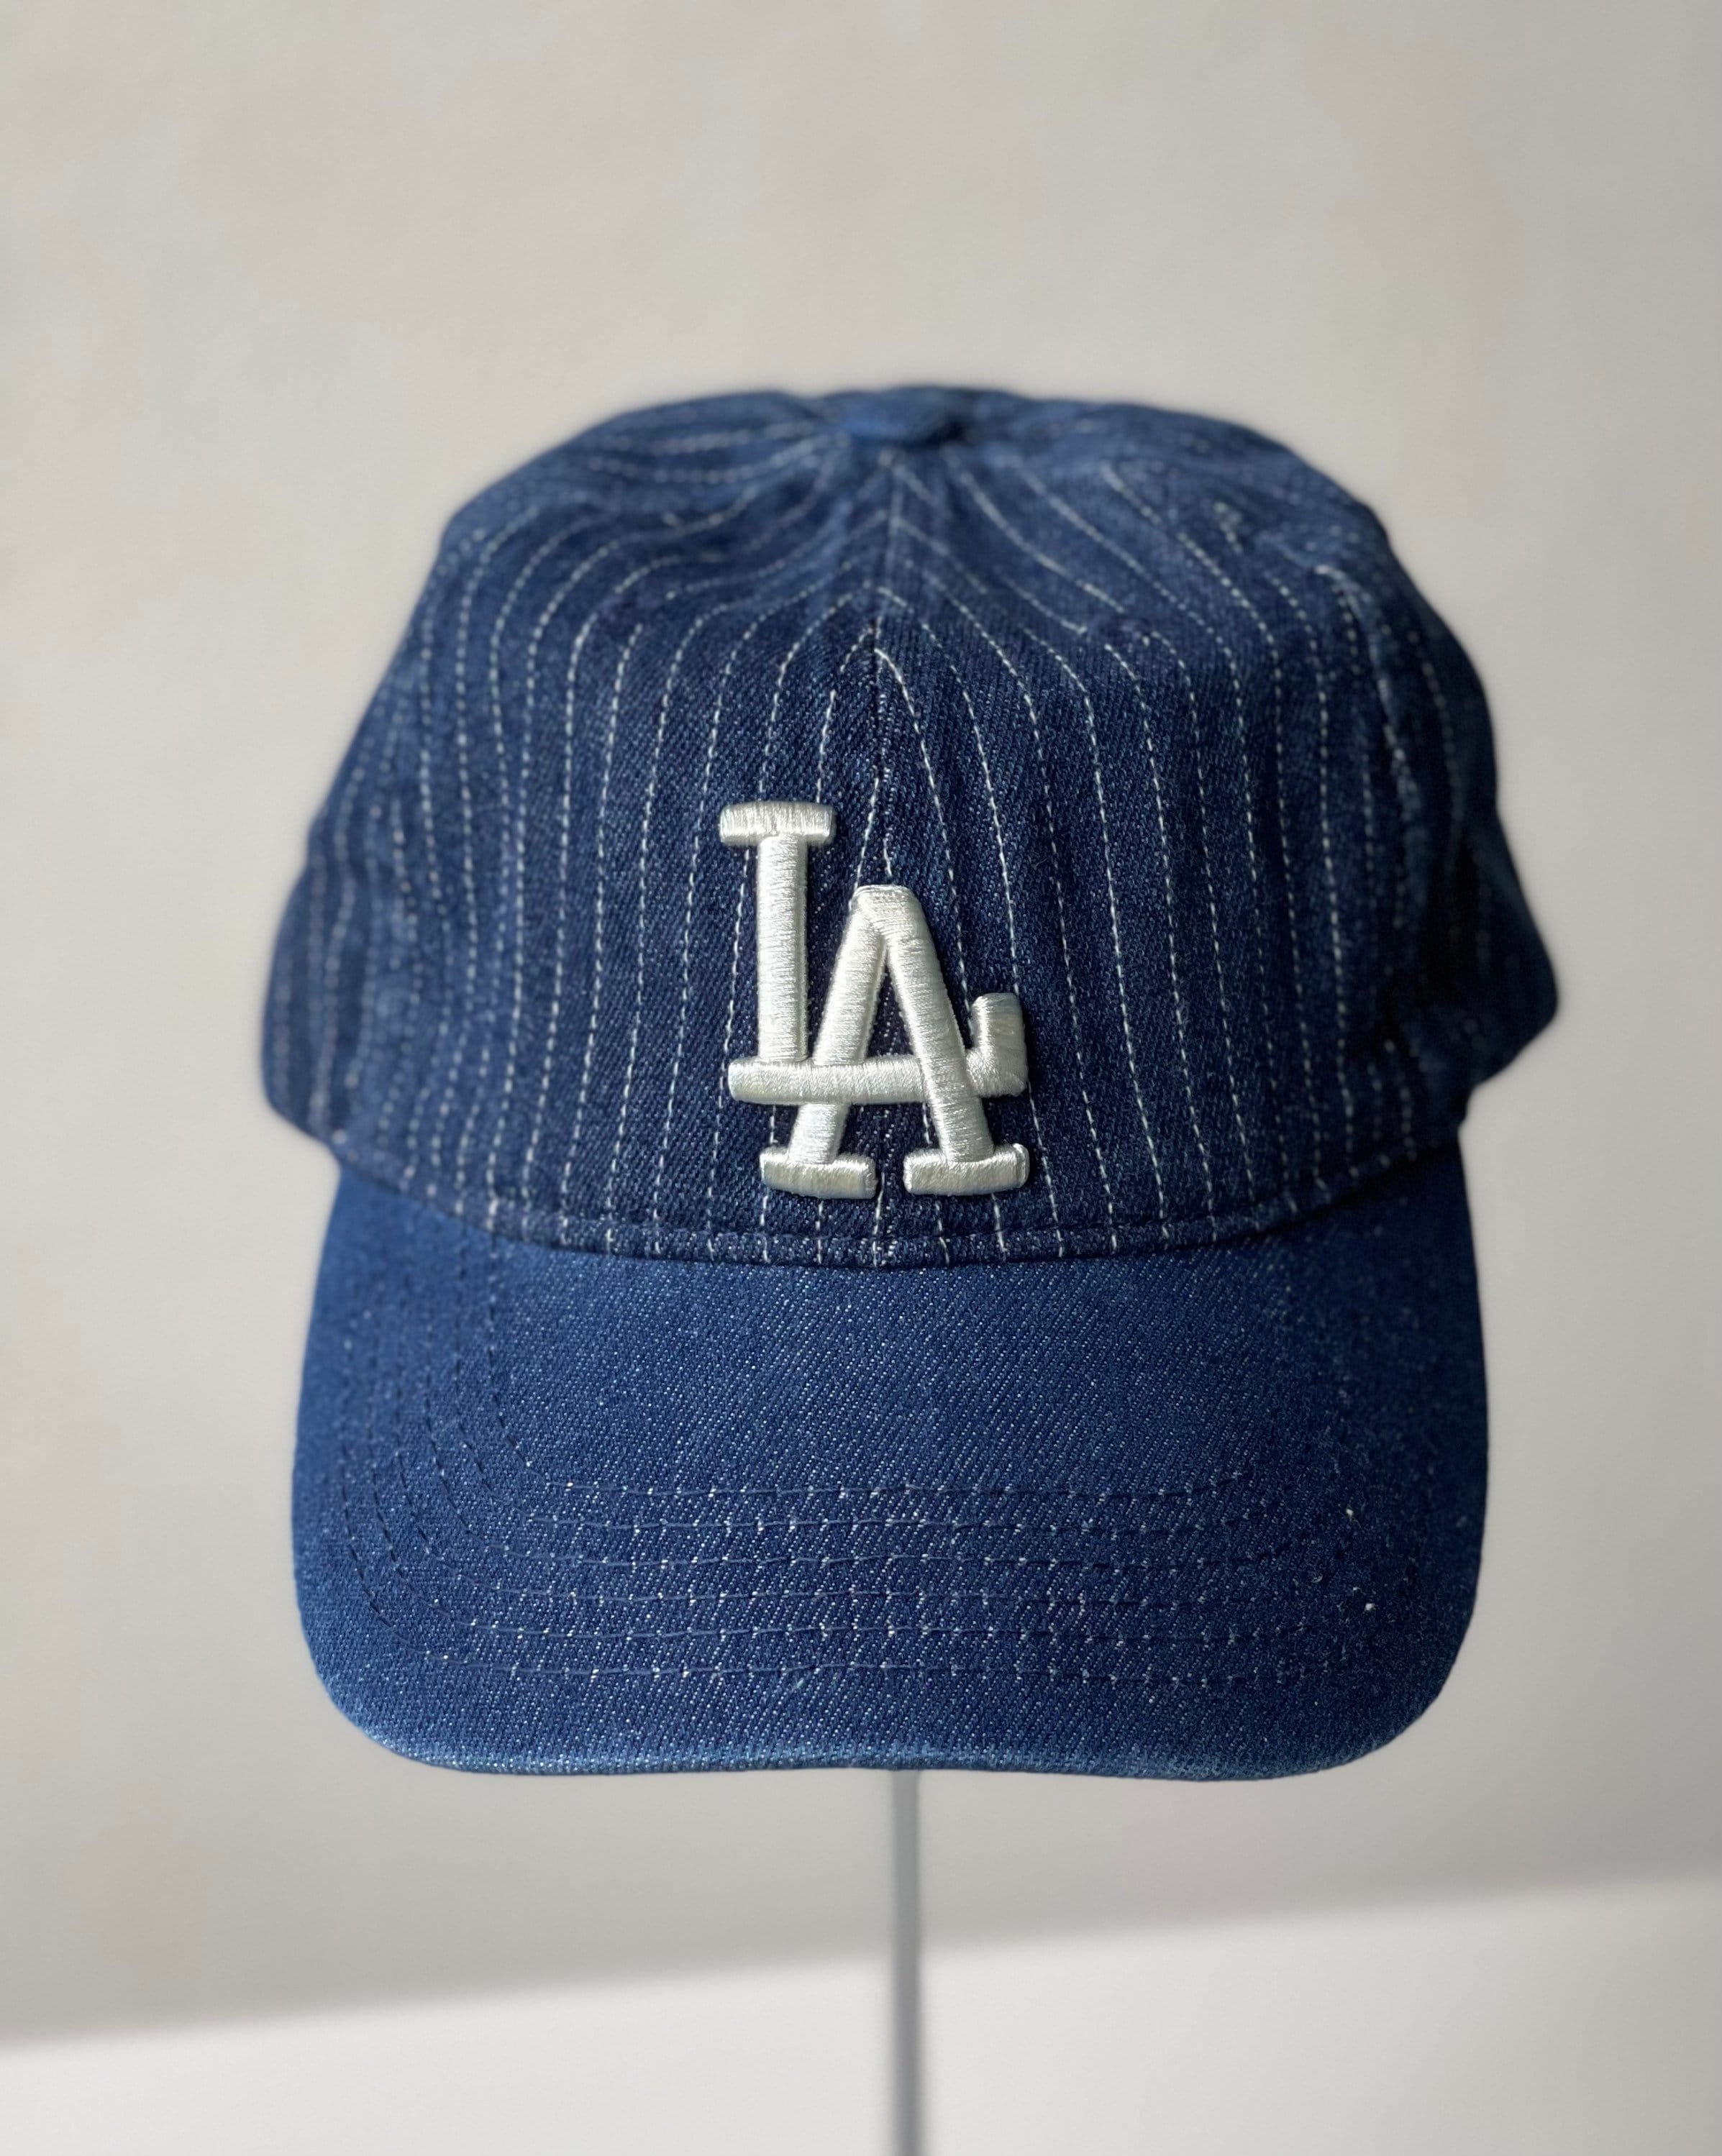 MLB Hats MLB Caps LA Hats Jean Hats Sport Hats Hat for 